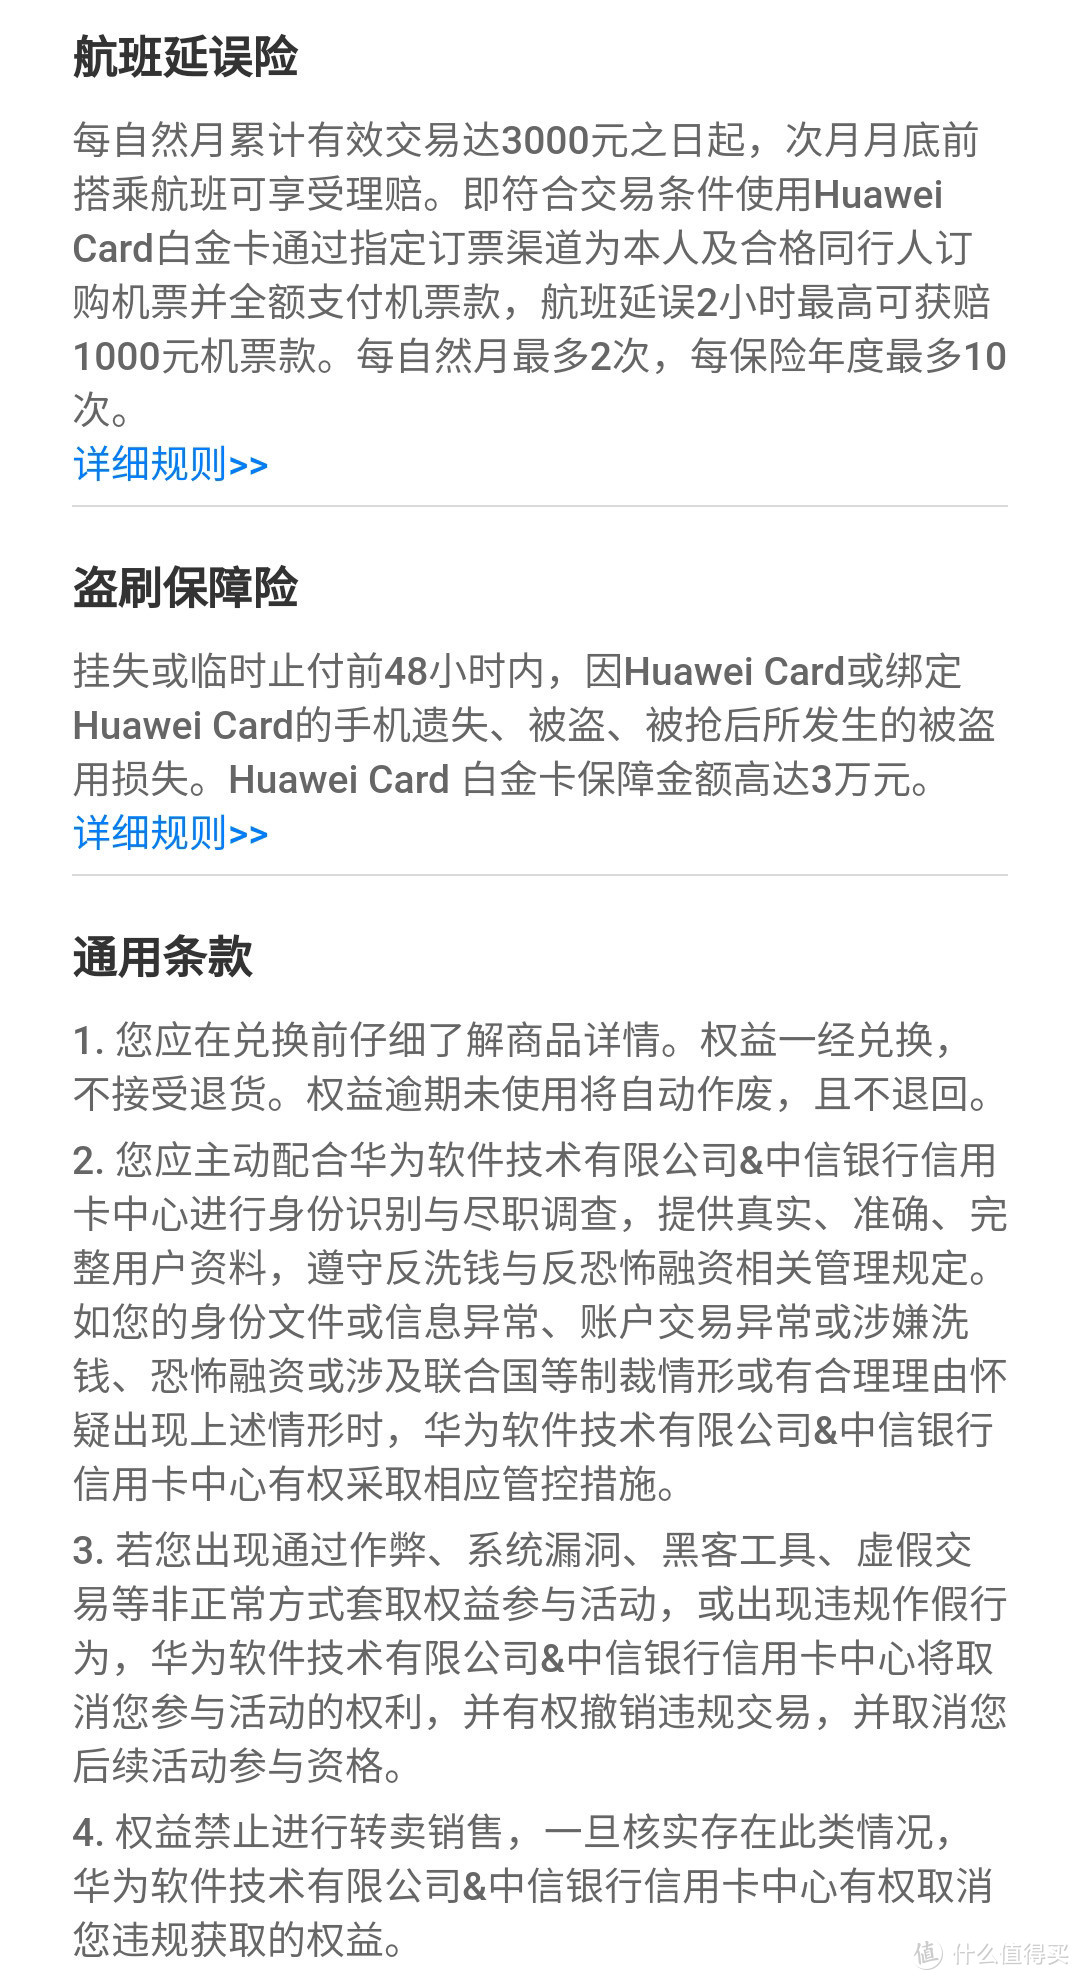 笔笔返现，花粉专属信用卡—Huawei Card来啦！ 